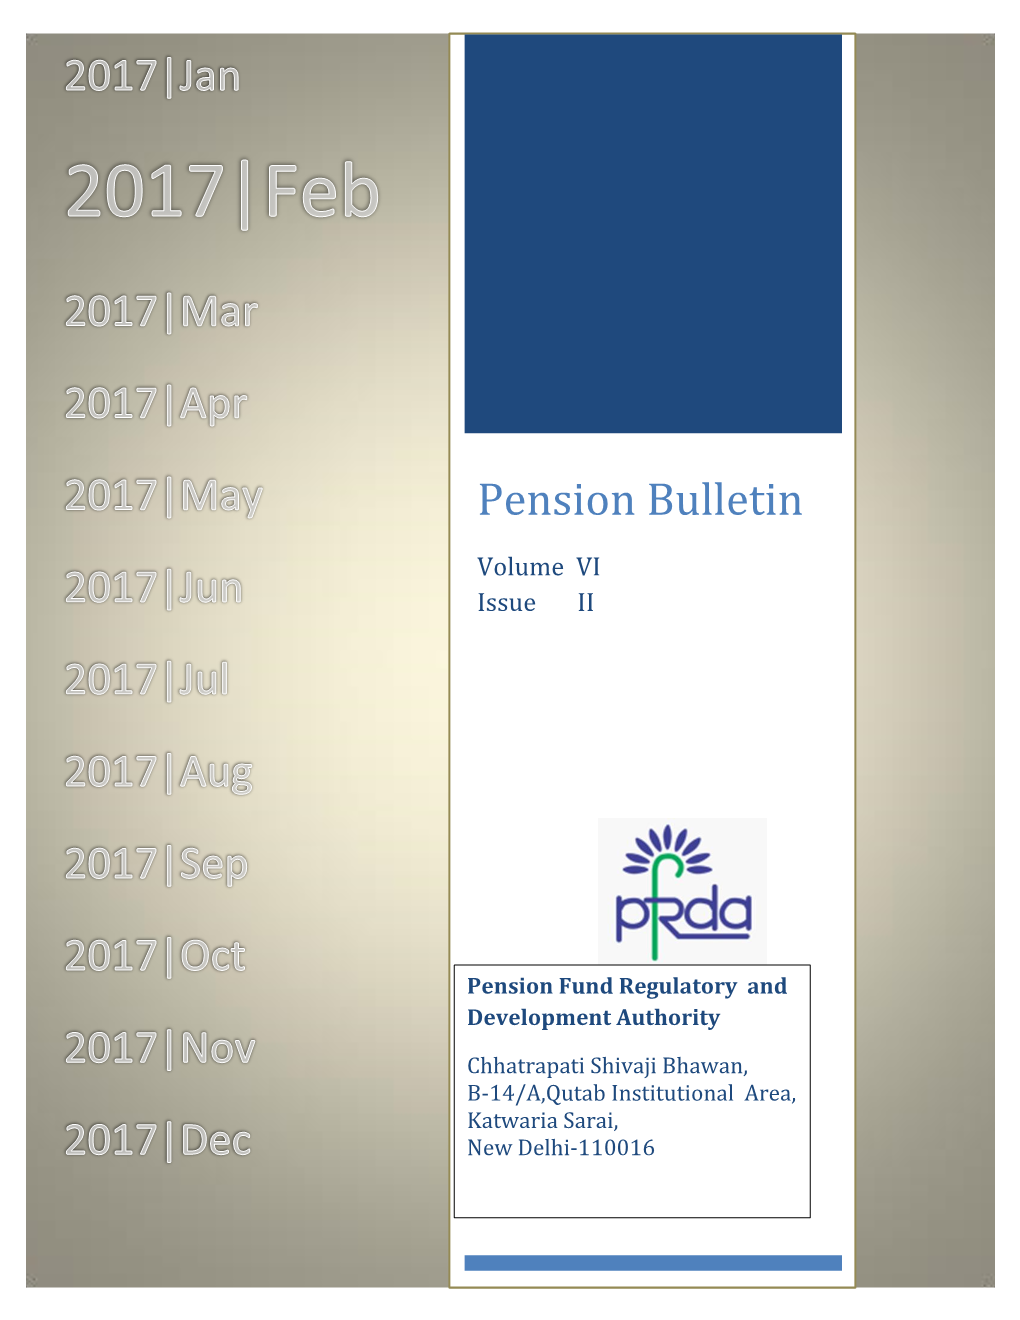 Pension Bulletin Volume VI Issue II